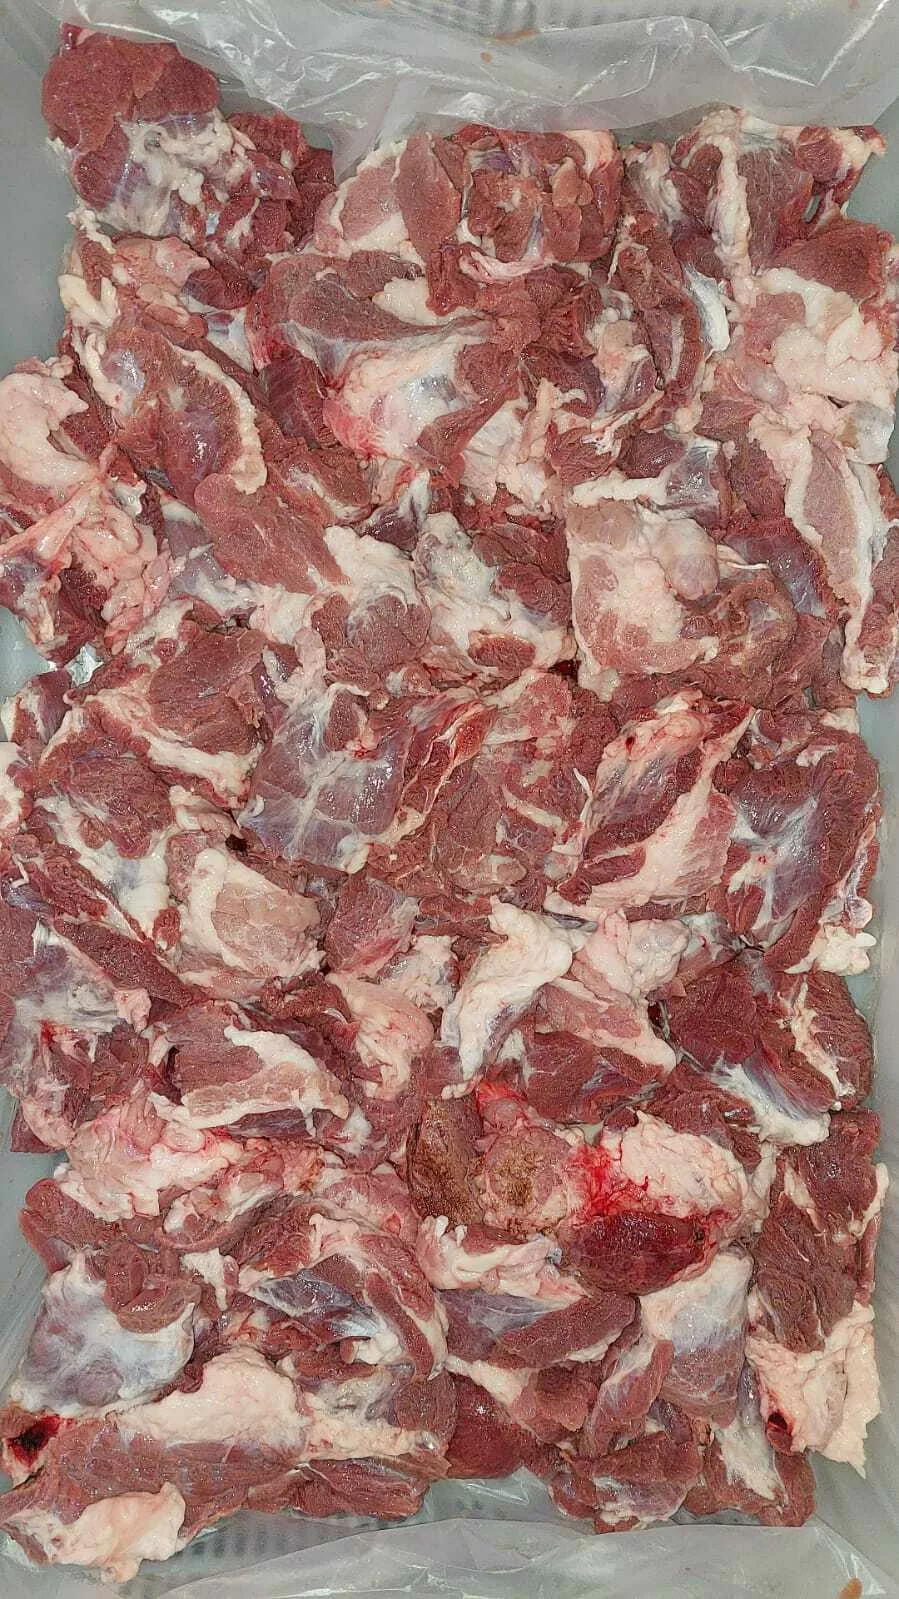 фотография продукта Подъязычку свиную и мясо пищевода